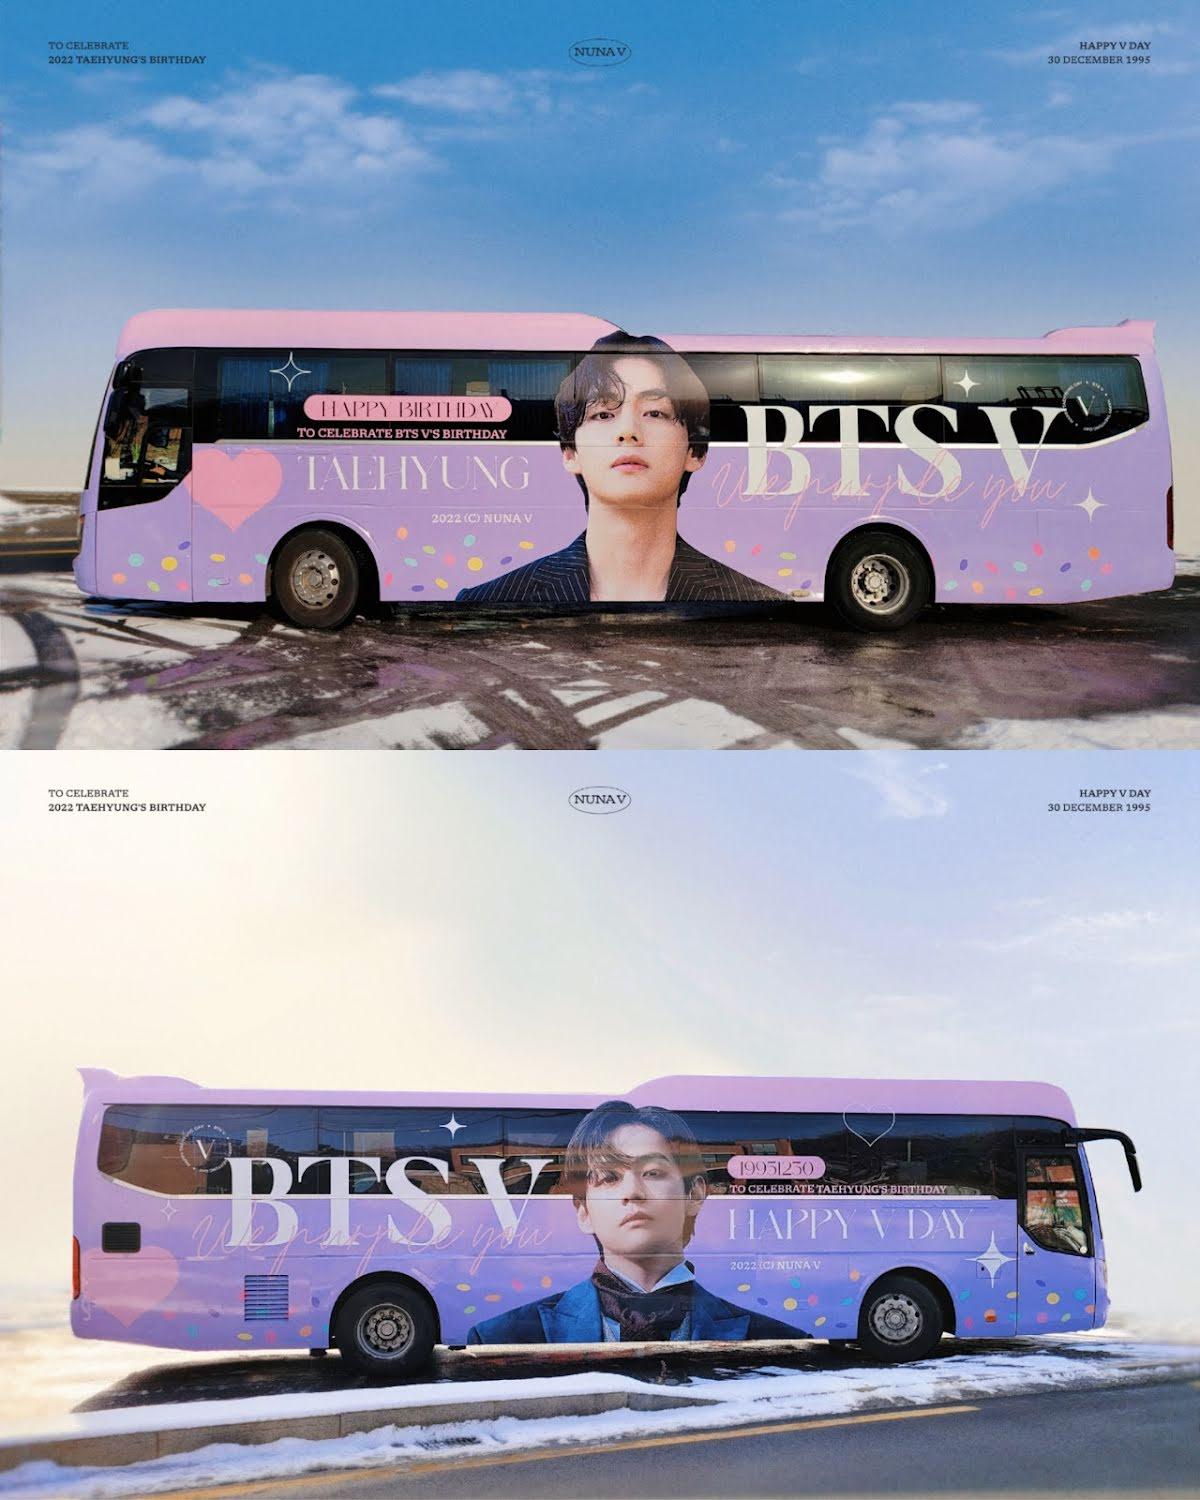 Quảng cáo sinh nhật V BTS trên xe bus 2 tuần (Ảnh: Internet)